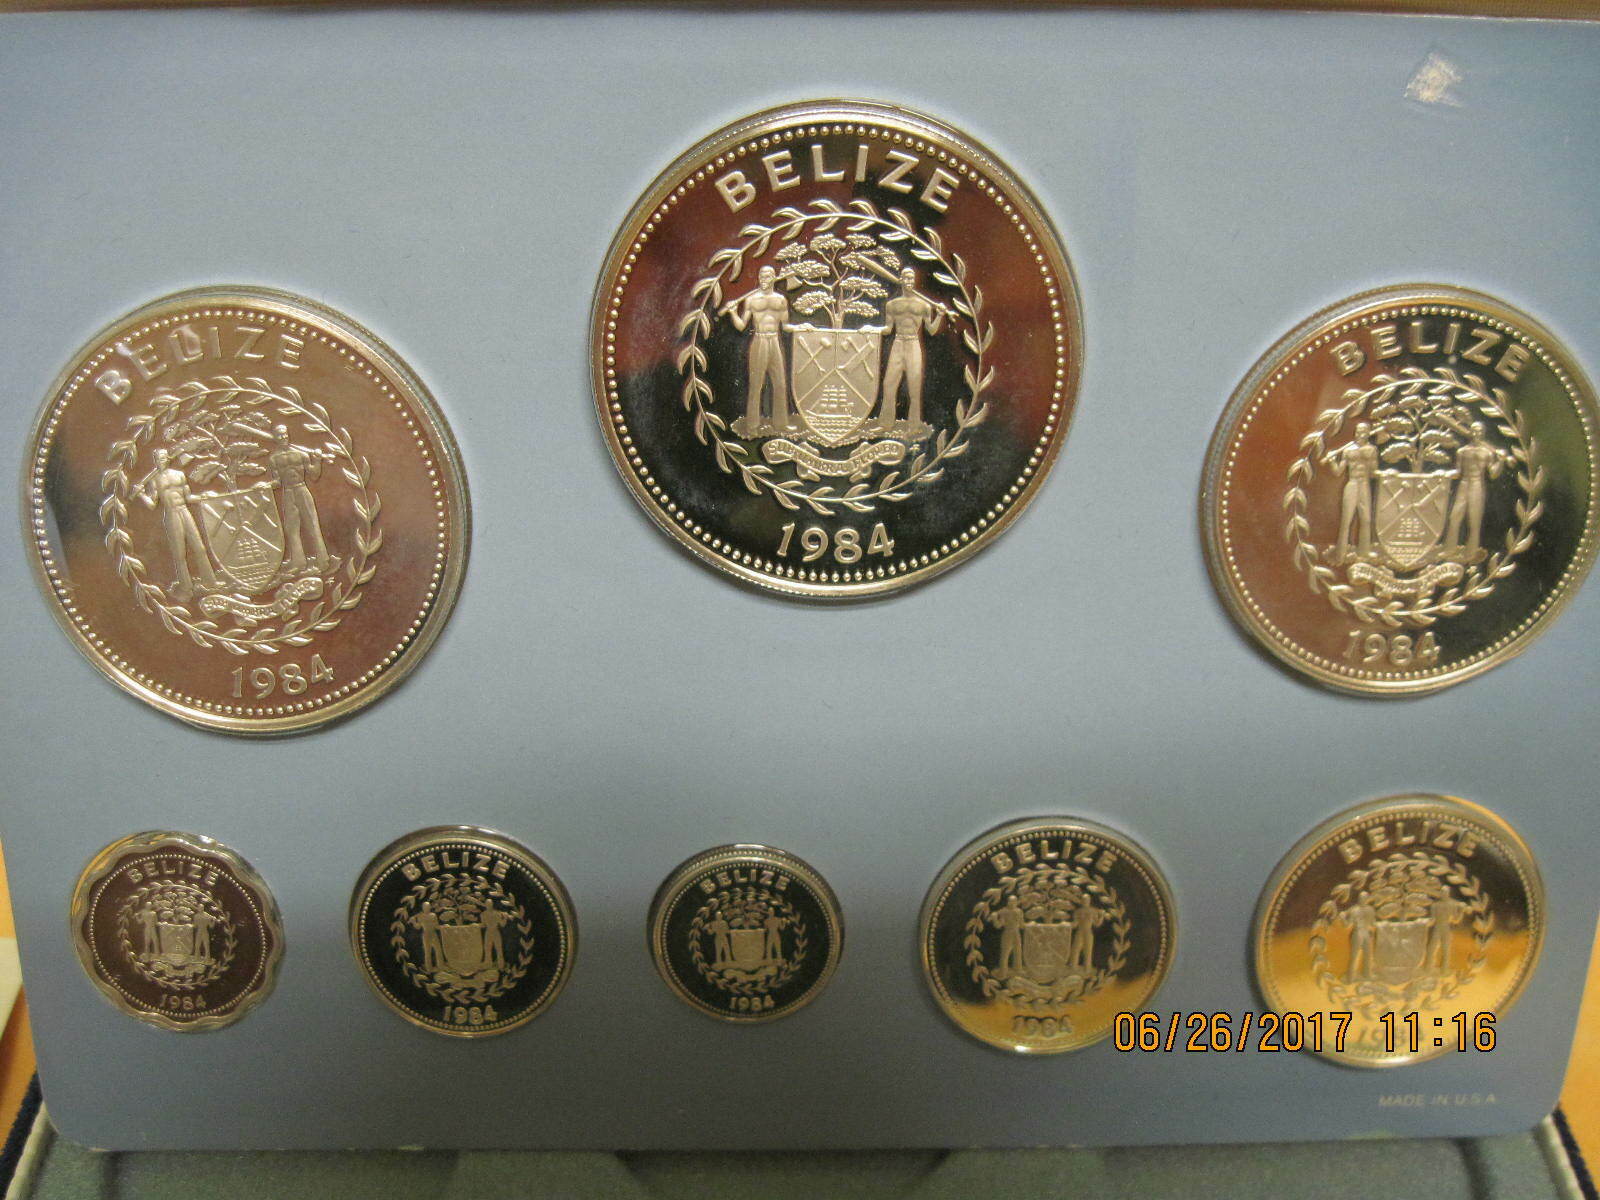 Belize 1984 .925 silver proof set obverse.jpg